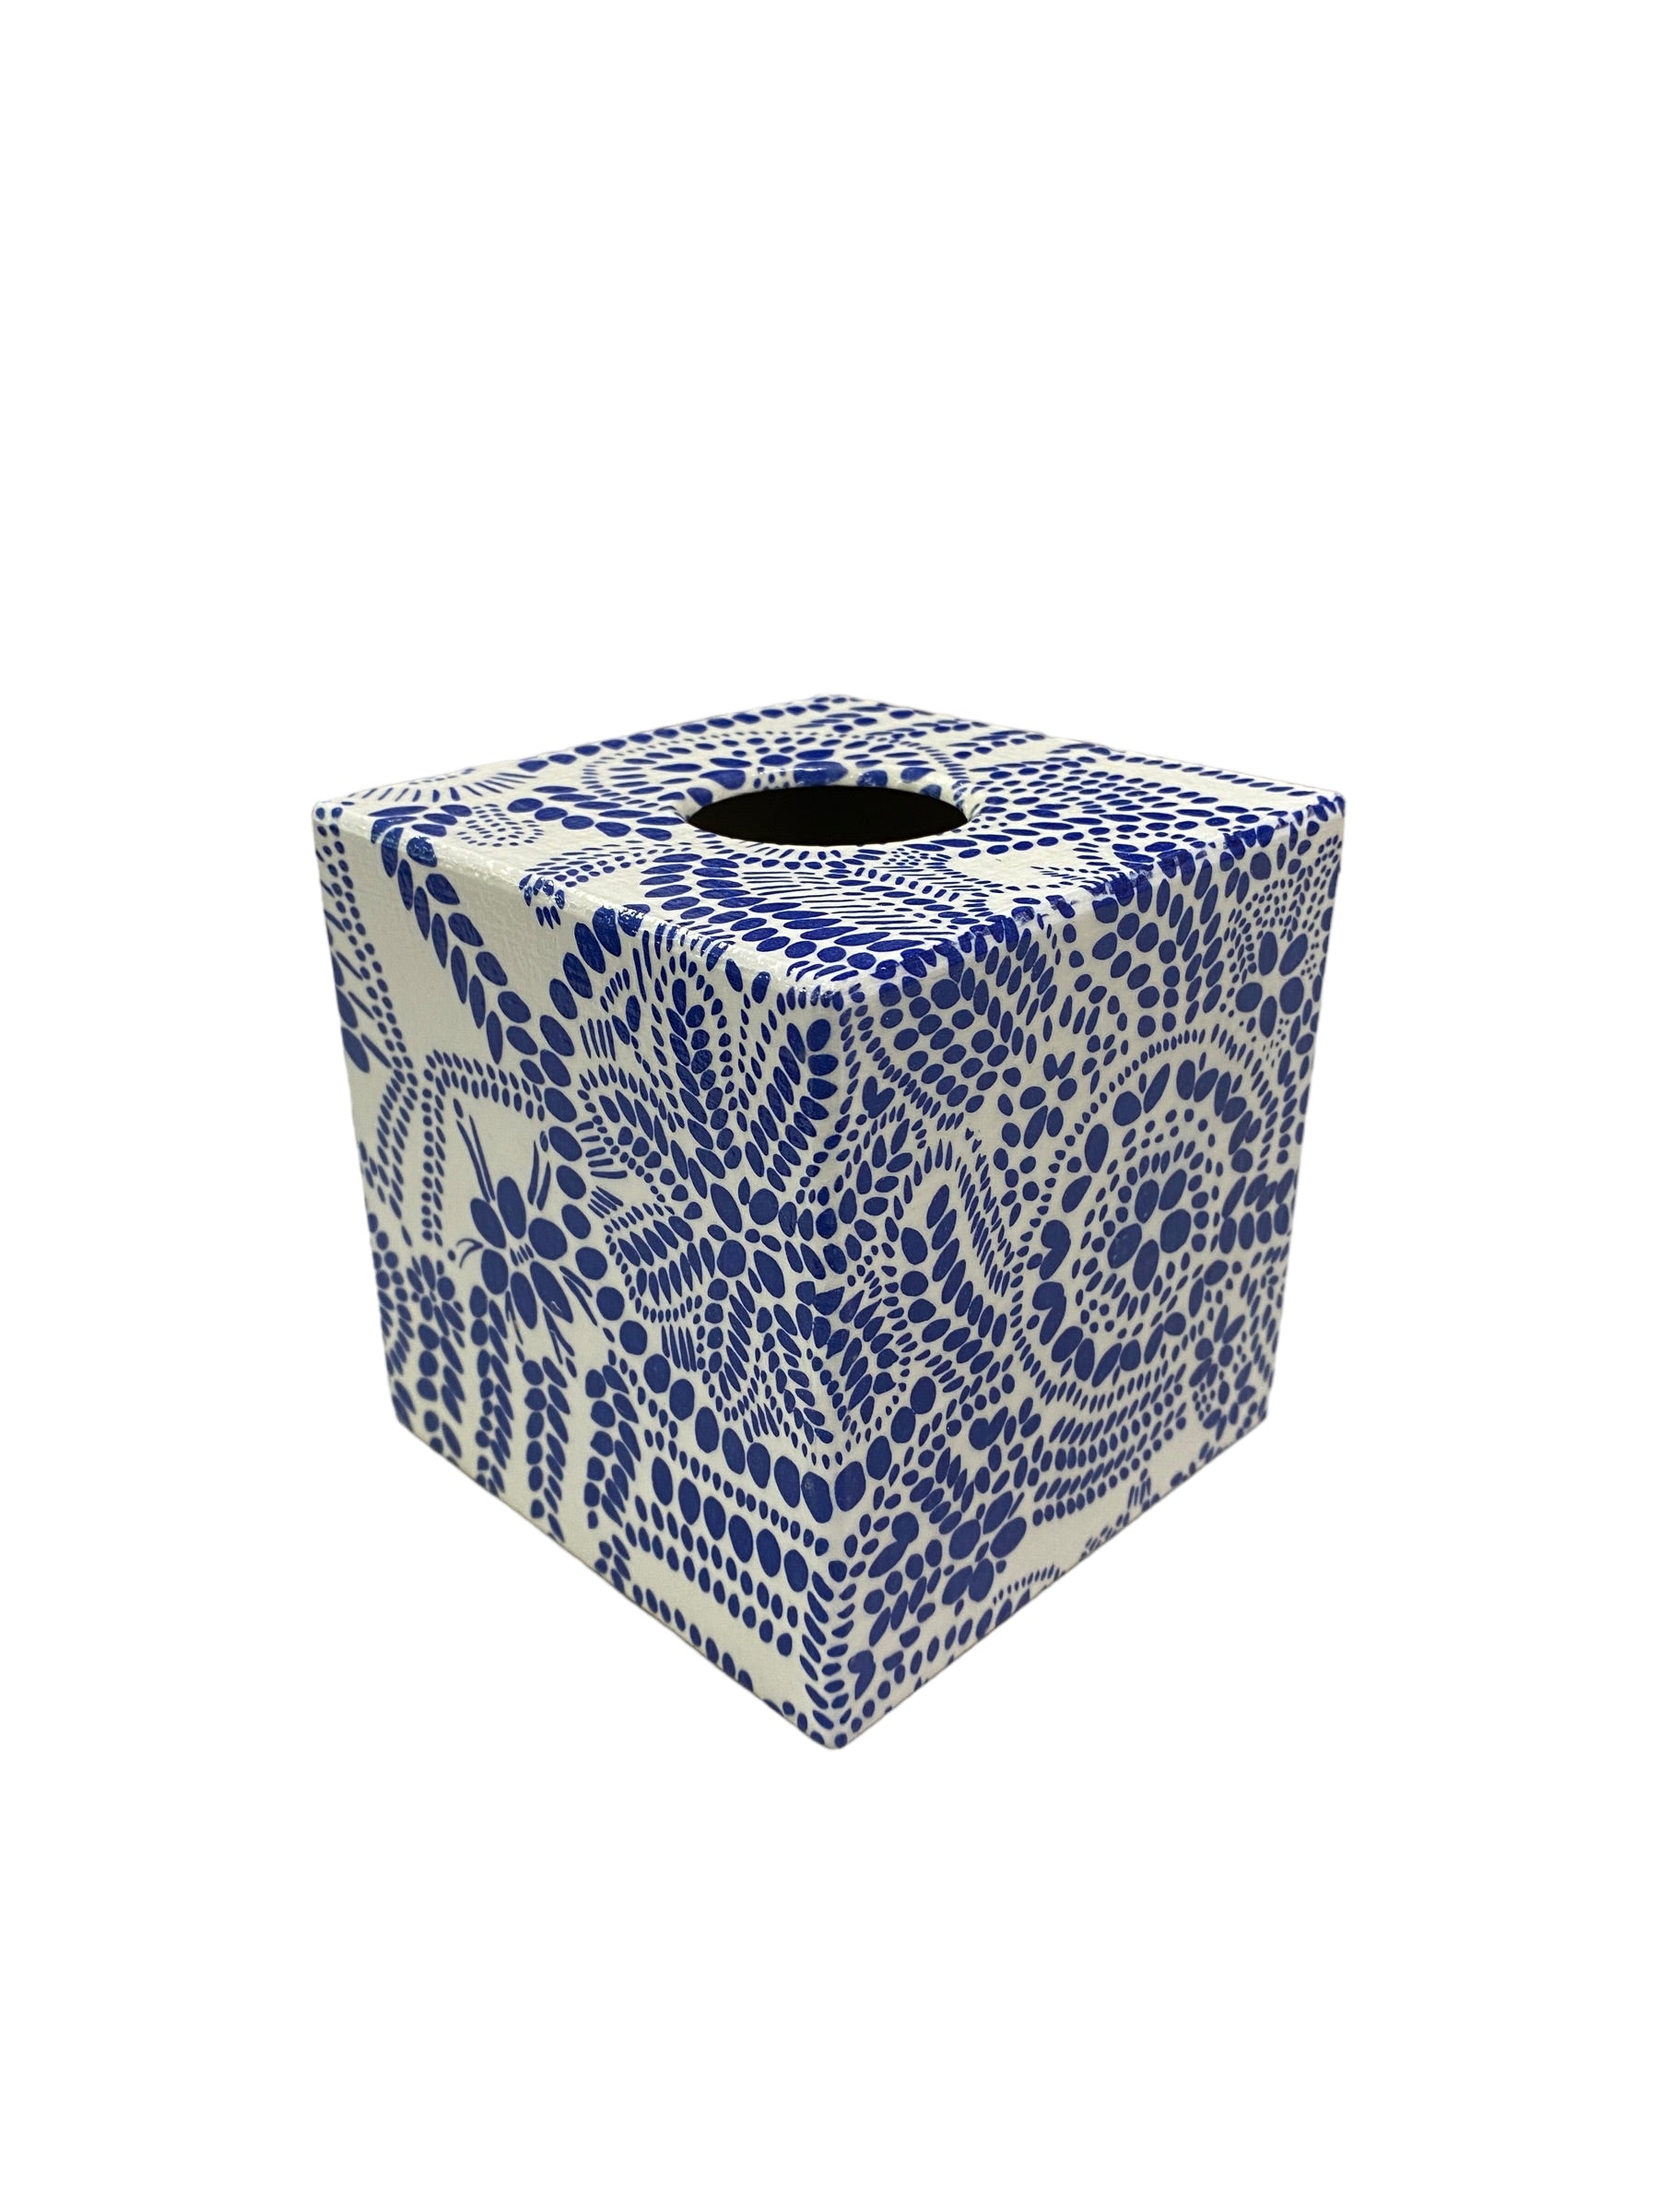 Tissue Box Cover Blue Mosaic